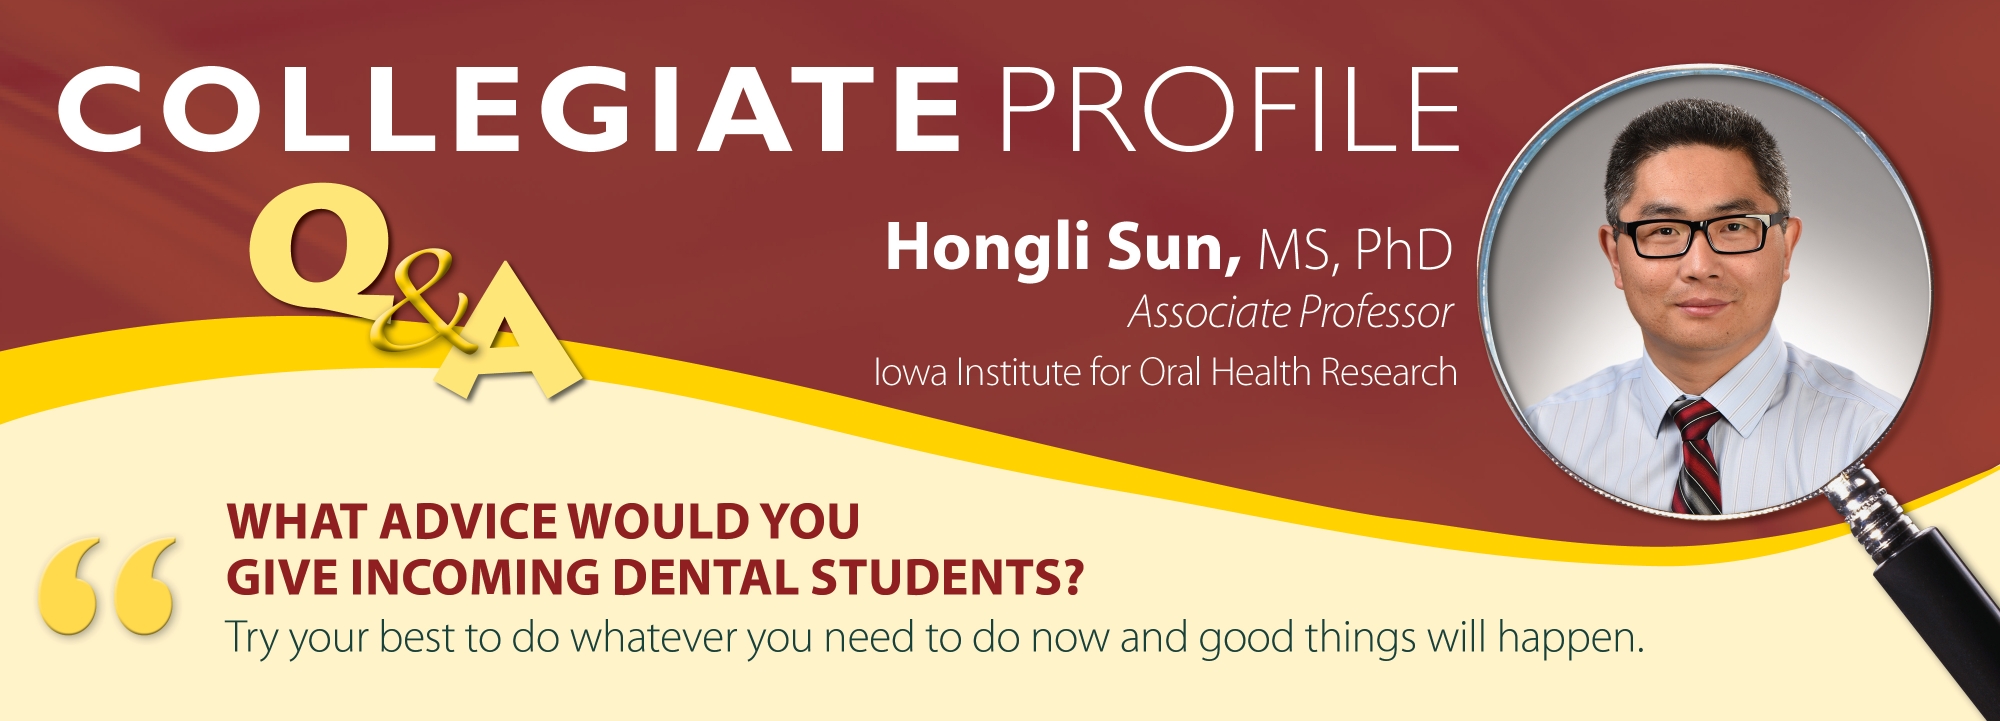 collegiate profile Hongli Sun